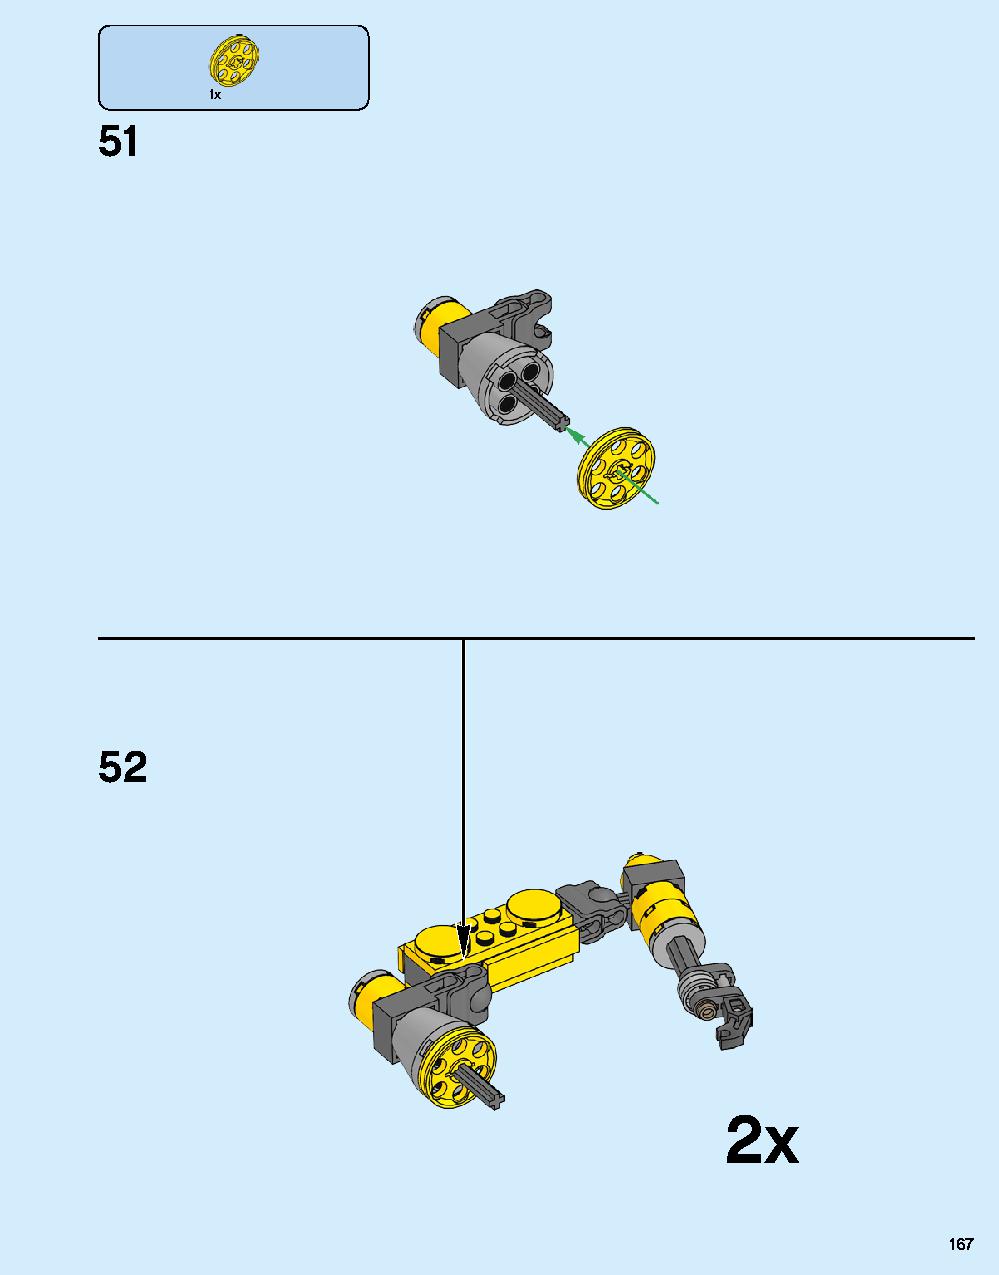 ハルクバスター：ウルトロン・エディション 76105 レゴの商品情報 レゴの説明書・組立方法 167 page